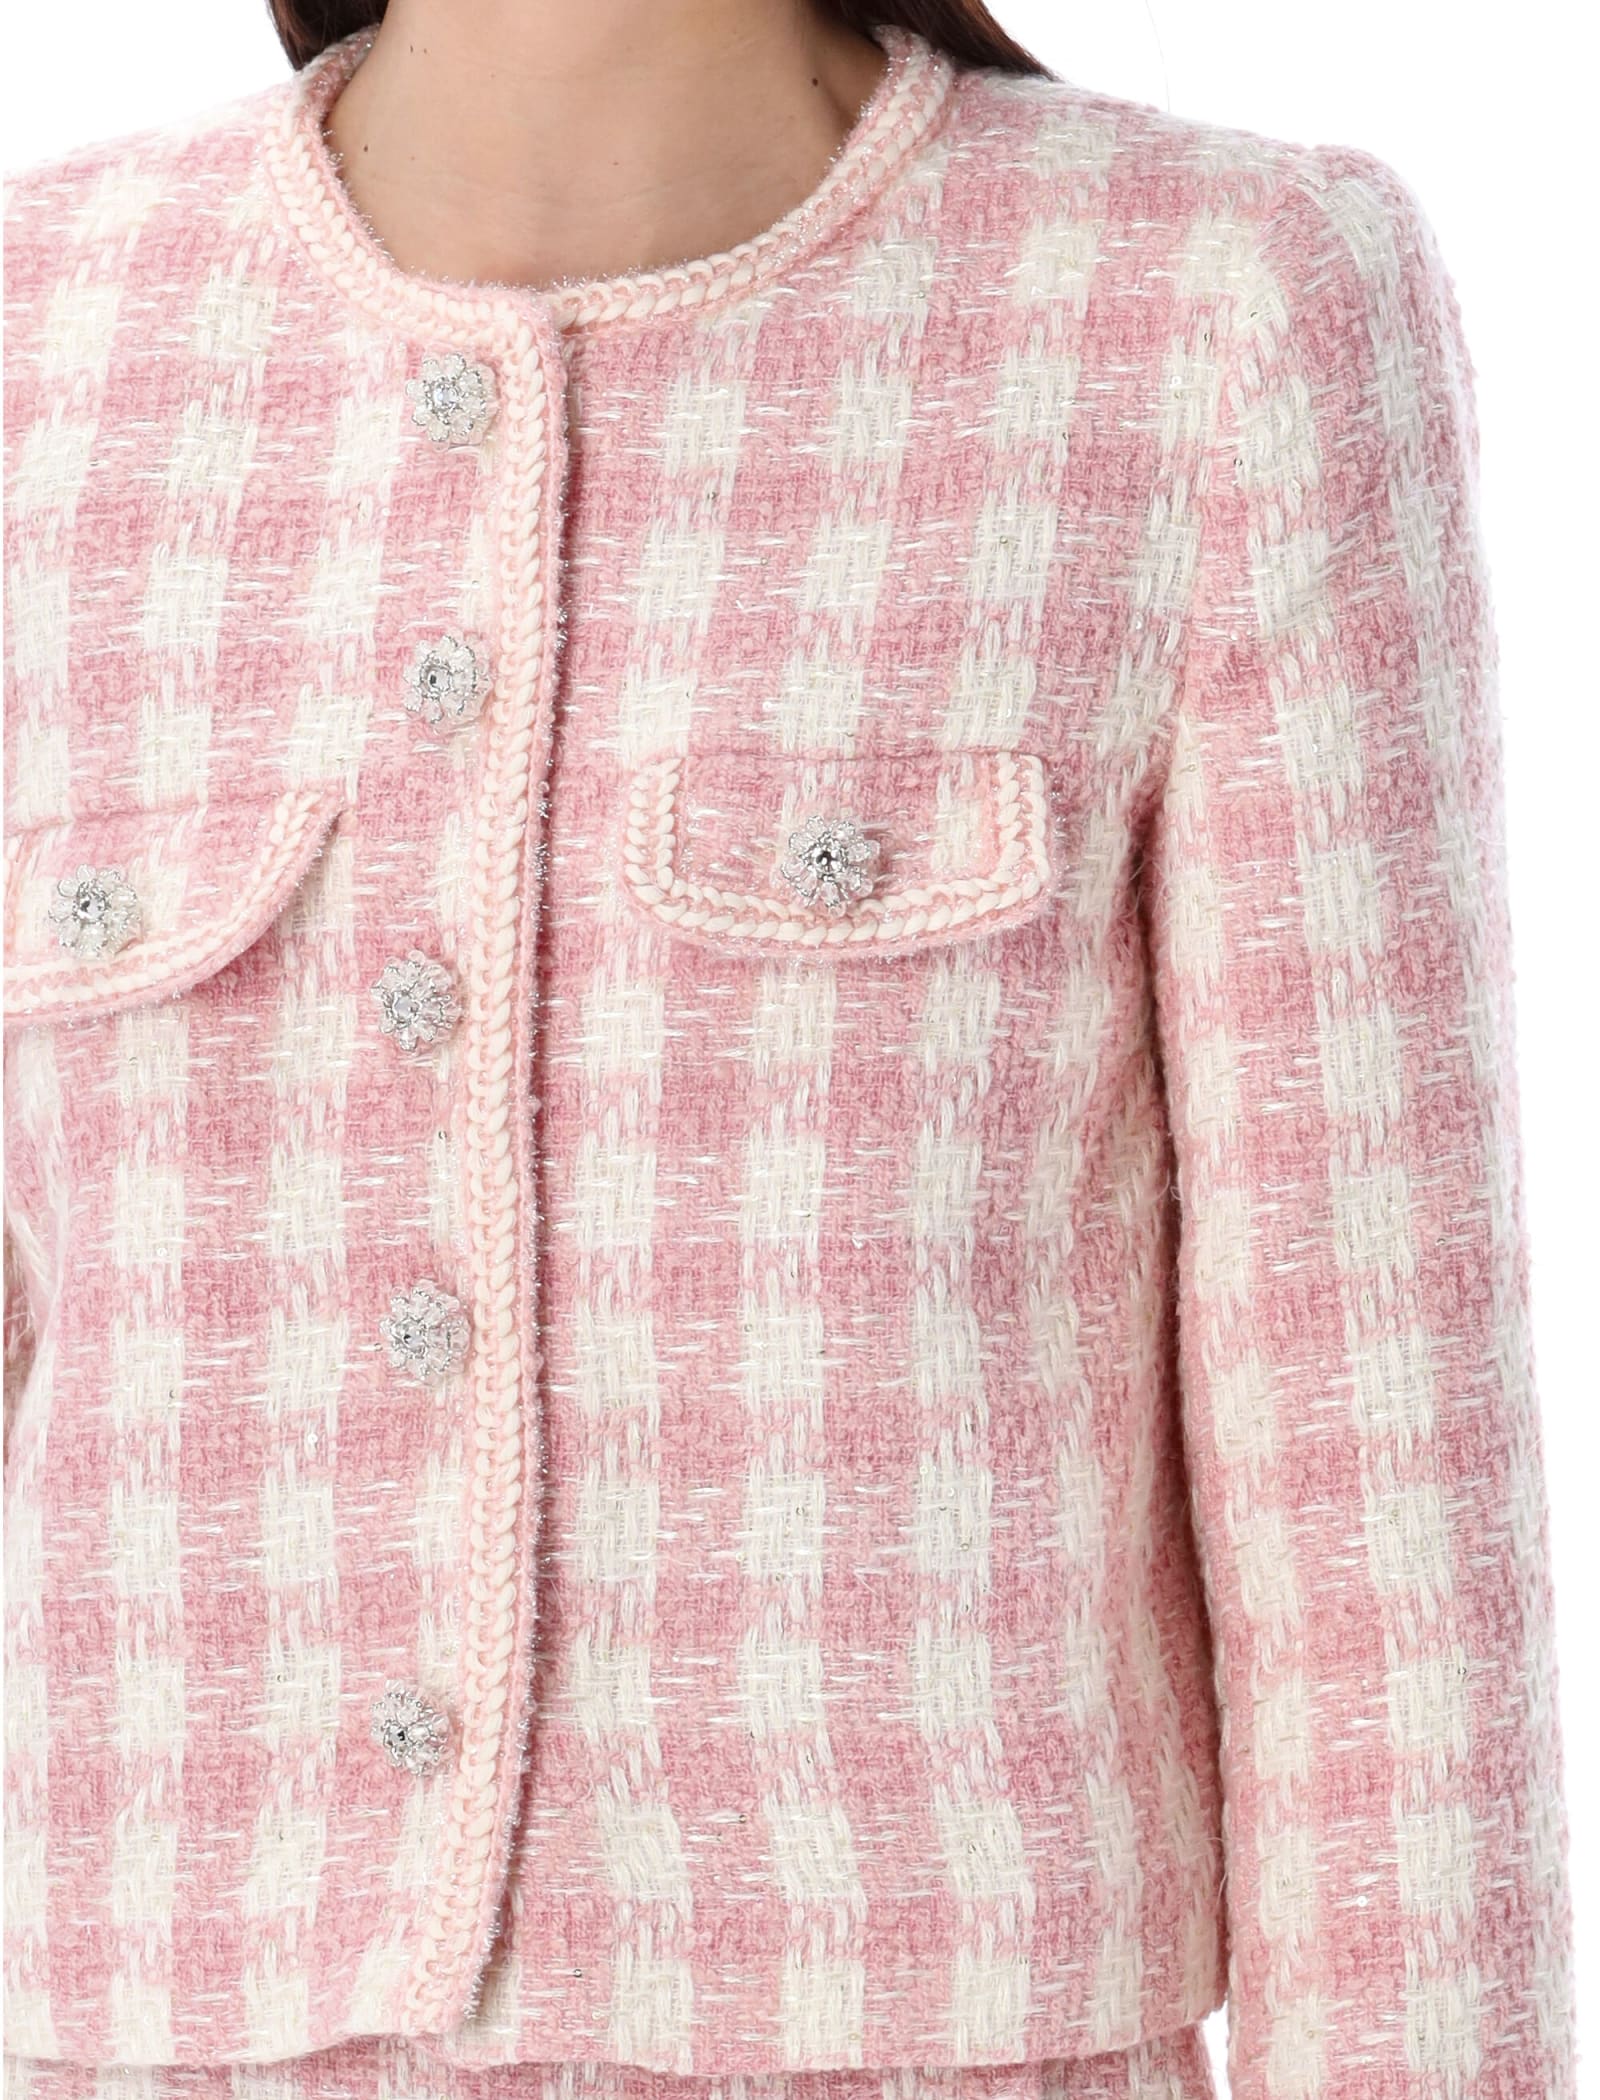 Shop Self-portrait Bouclé Mini Skirt In Pink Check